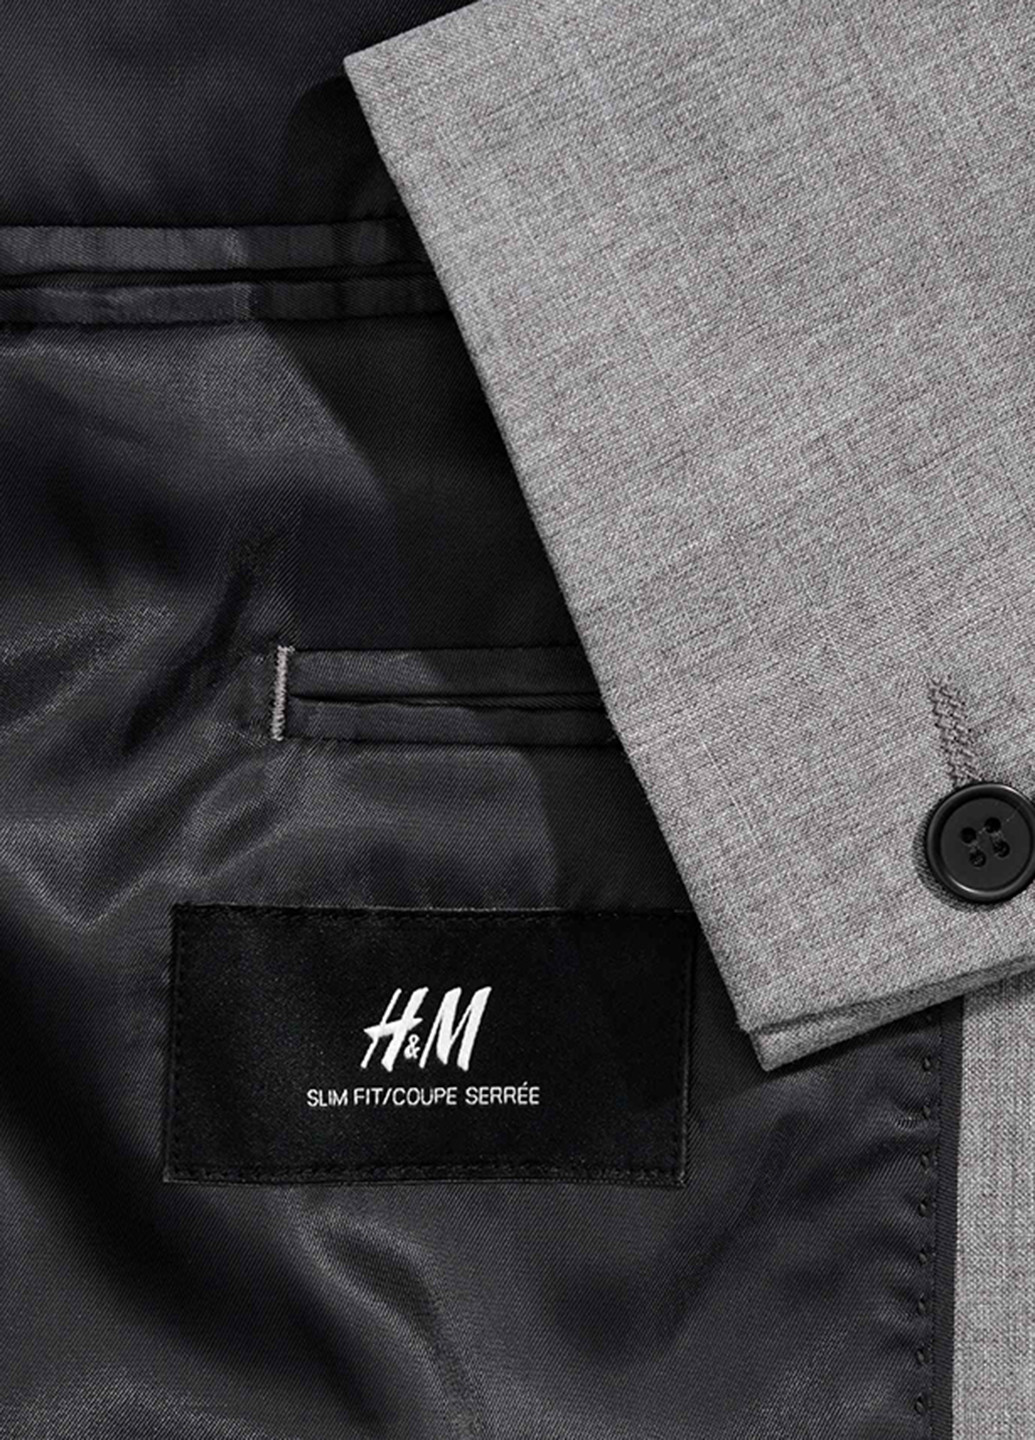 Піджак H&M з довгим рукавом однотонний сірий діловий